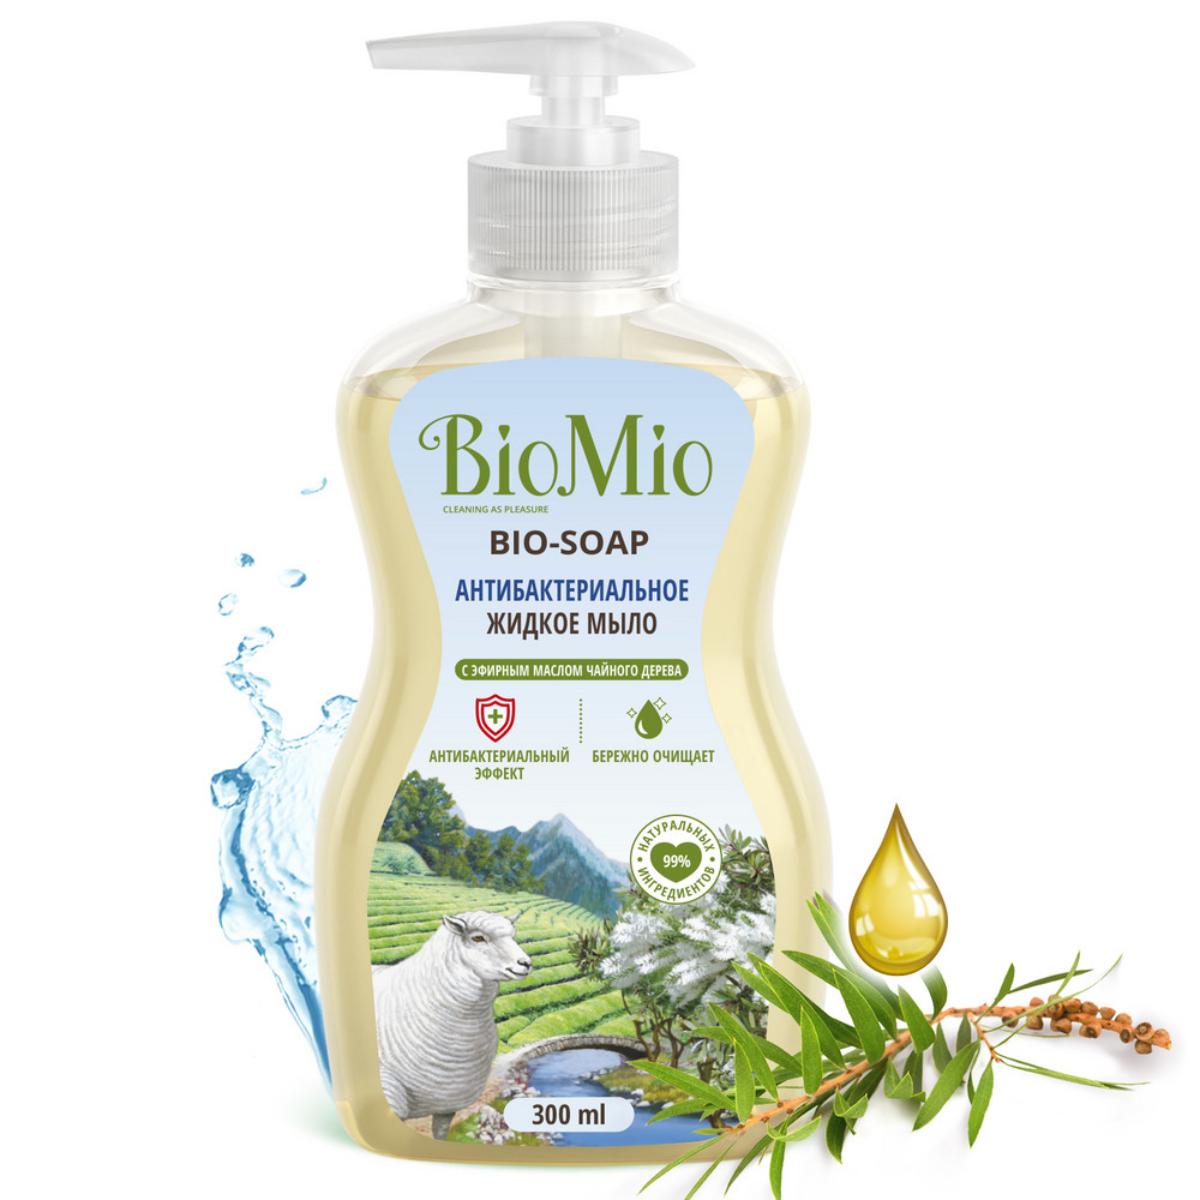 Антибактериальное жидкое мыло с маслом чайного дерева, 300 мл, BioMio